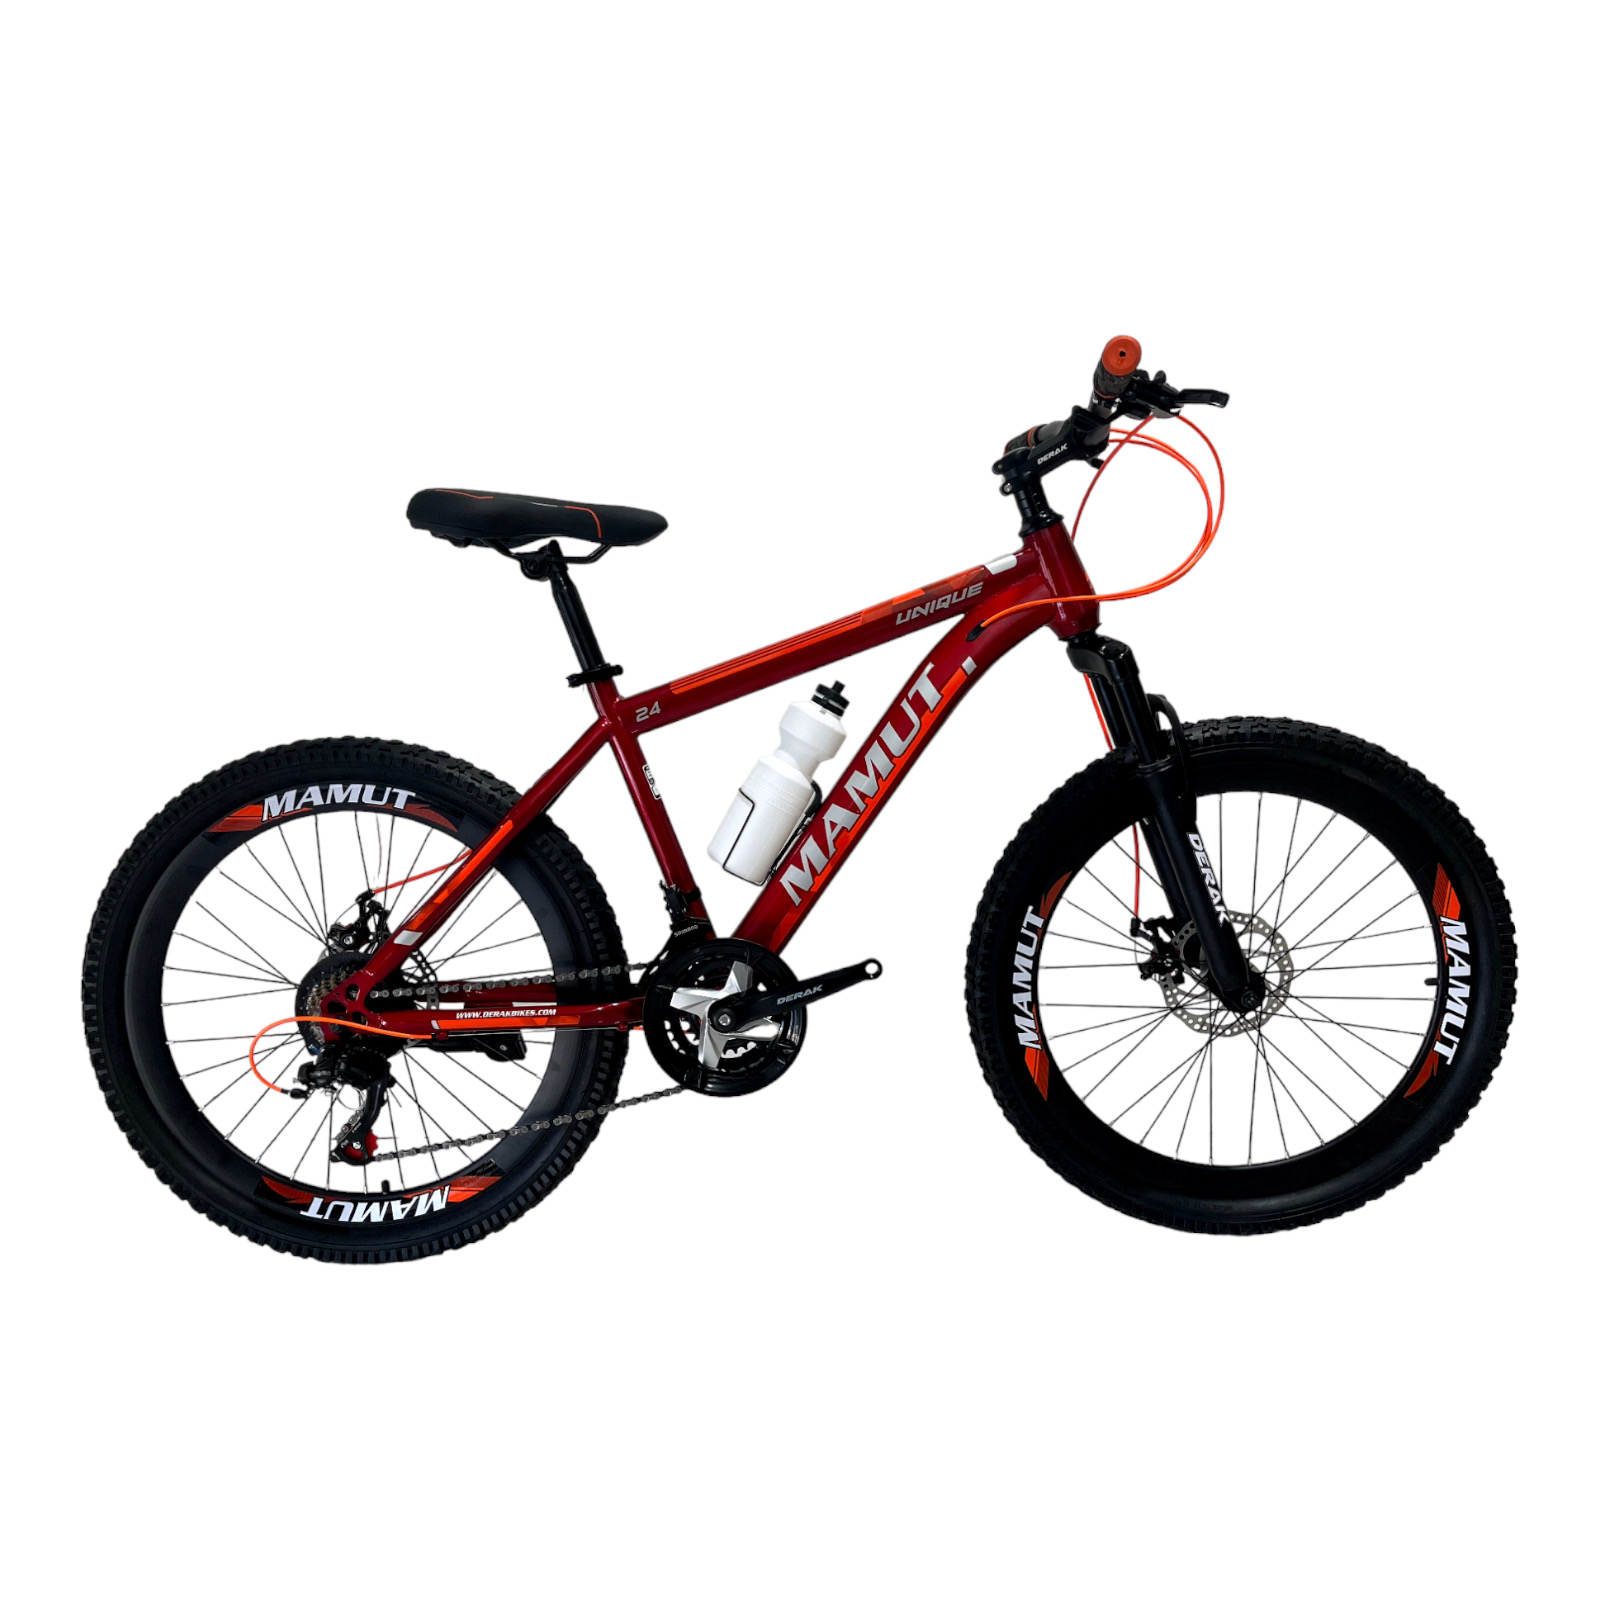 نکته خرید - قیمت روز دوچرخه کوهستان دراک مدل ماموت سایز طوقه 24 خرید